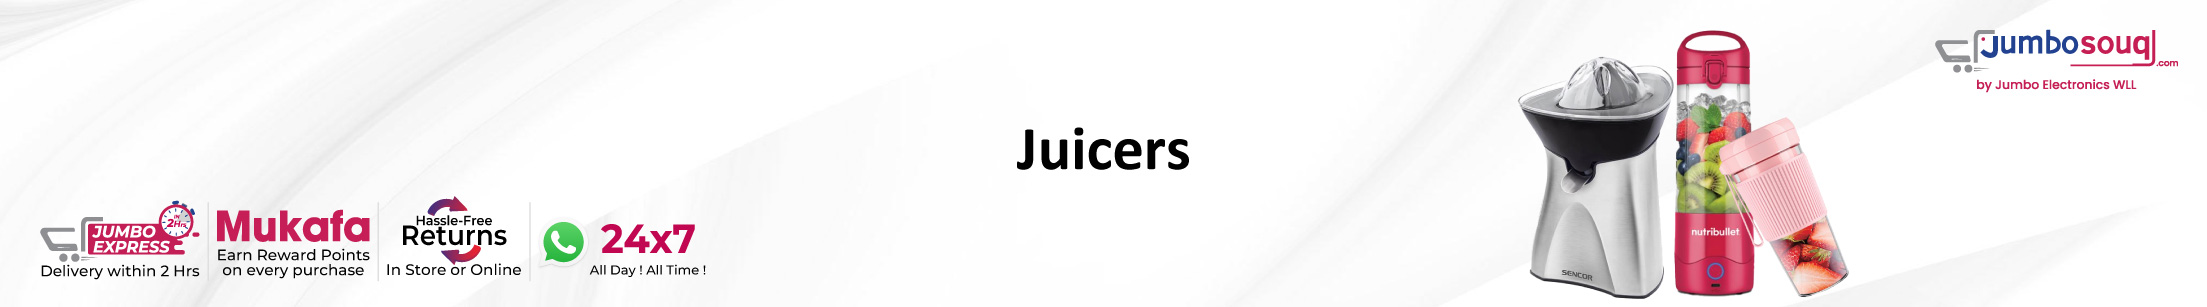 Juicers